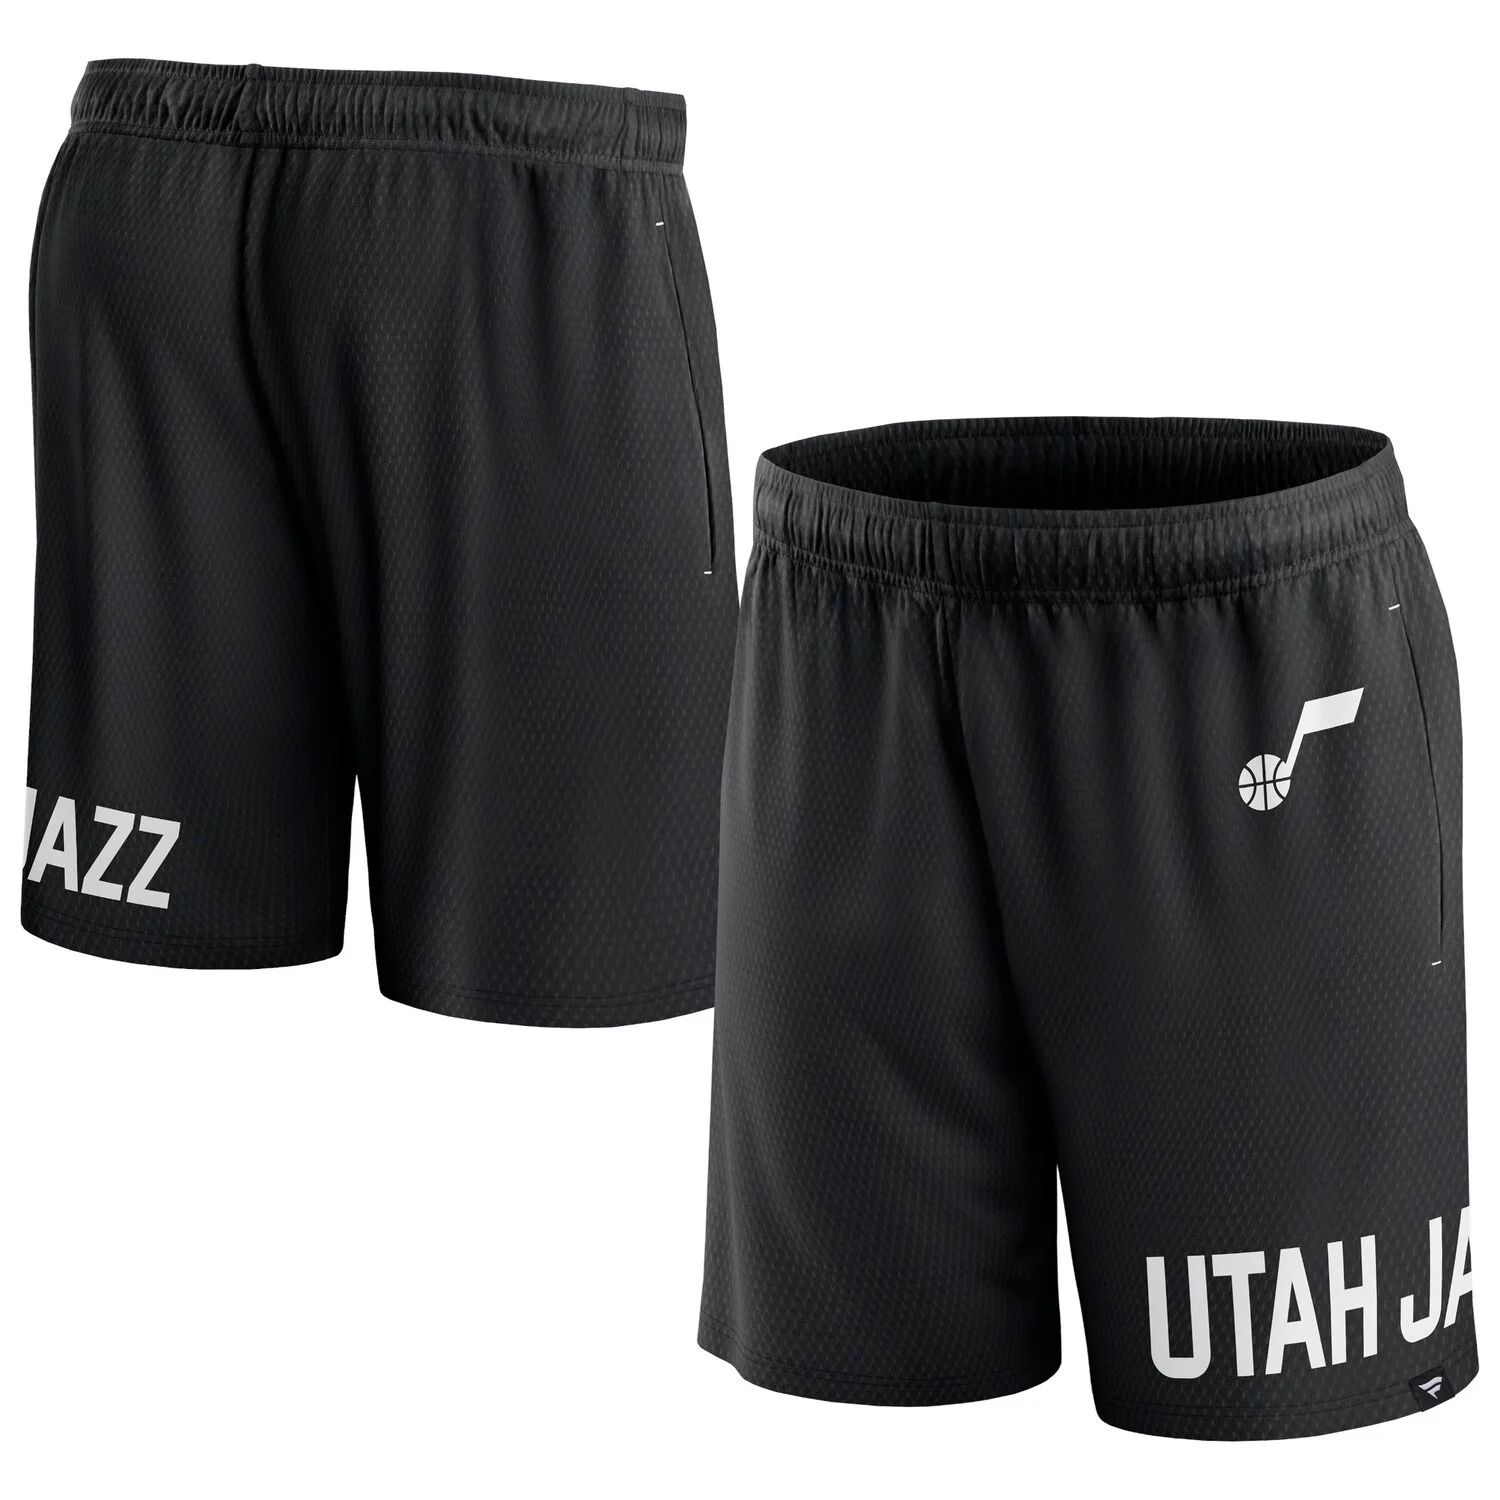 Мужские черные фирменные шорты из сетчатой ткани Utah Jazz Free Throw Fanatics